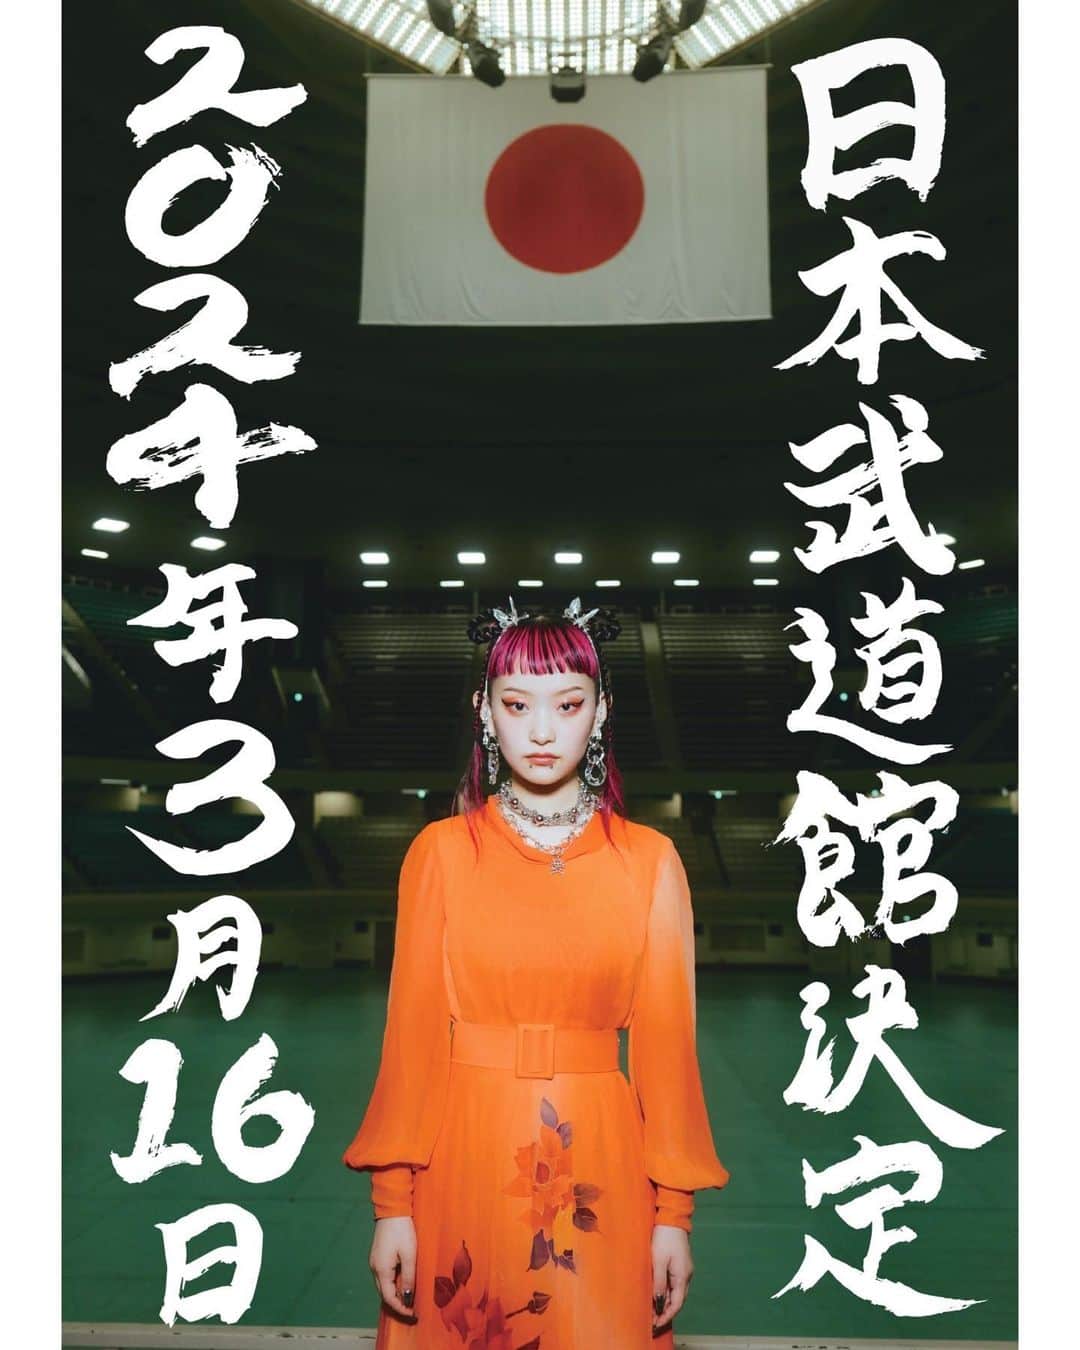 詩羽のインスタグラム：「. 【日本武道館公演開催決定のお知らせ】  *～:+:～*～:+:～*～*～:+:～*～:+:～*～*～:+:～*～:+:～*  みんなへ  私たち水曜日のカンパネラは、2024年3月16日(土)に日本武道館公演を開催させていただくことが決定しました。  私は2021年9月に水曜日のカンパネラに加入し、武道館公演が行われる3月には加入して2年半と言う月日が経つ頃になります。 あっという間の2年半で、たった2年半。 武道館に立つには少し早すぎるかもしれませんが、ここまでの目まぐるしい日々の中で、私なりに、覚悟を持ち色々なものを背負い努力してきたつもりです。  開催まであと半年ほど、あのステージにさらに相応しいアーティストへと日々進化をしていきます。  私の2ndステージの第一歩となる1日です。 全ての方に大きな愛をお渡しします。  みんなに会えることを楽しみにしています。 　　　　　　　　　　　　　　　　　　　　　　　　　 . 　　　　　　　　　　　　　　　　　　　　　　詩羽  *～:+:～*～:+:～*～*～:+:～*～:+:～*～*～:+:～*～:+:～*  水曜日のカンパネラ 日本武道館単独公演  ●開催日：2024年3月16日(土)　OPEN16:30／START17:30（予定） ●開催場所：日本武道館  ●客席形態：全席指定（センターステージ仕様） ●チケット料金： ・一般　全席指定 8,800円(税込) ・学割　全席指定　　5,500円(税込)　※小学生〜大学生　 ・キッズ　全席指定　2,200円(税込) ※3歳以上6歳未満 ●チケット情報： ・超最速先行 期間：7月19日(水) 21:00〜7月24日(月) 23:59 URL：https://w.pia.jp/t/wed-camp/」